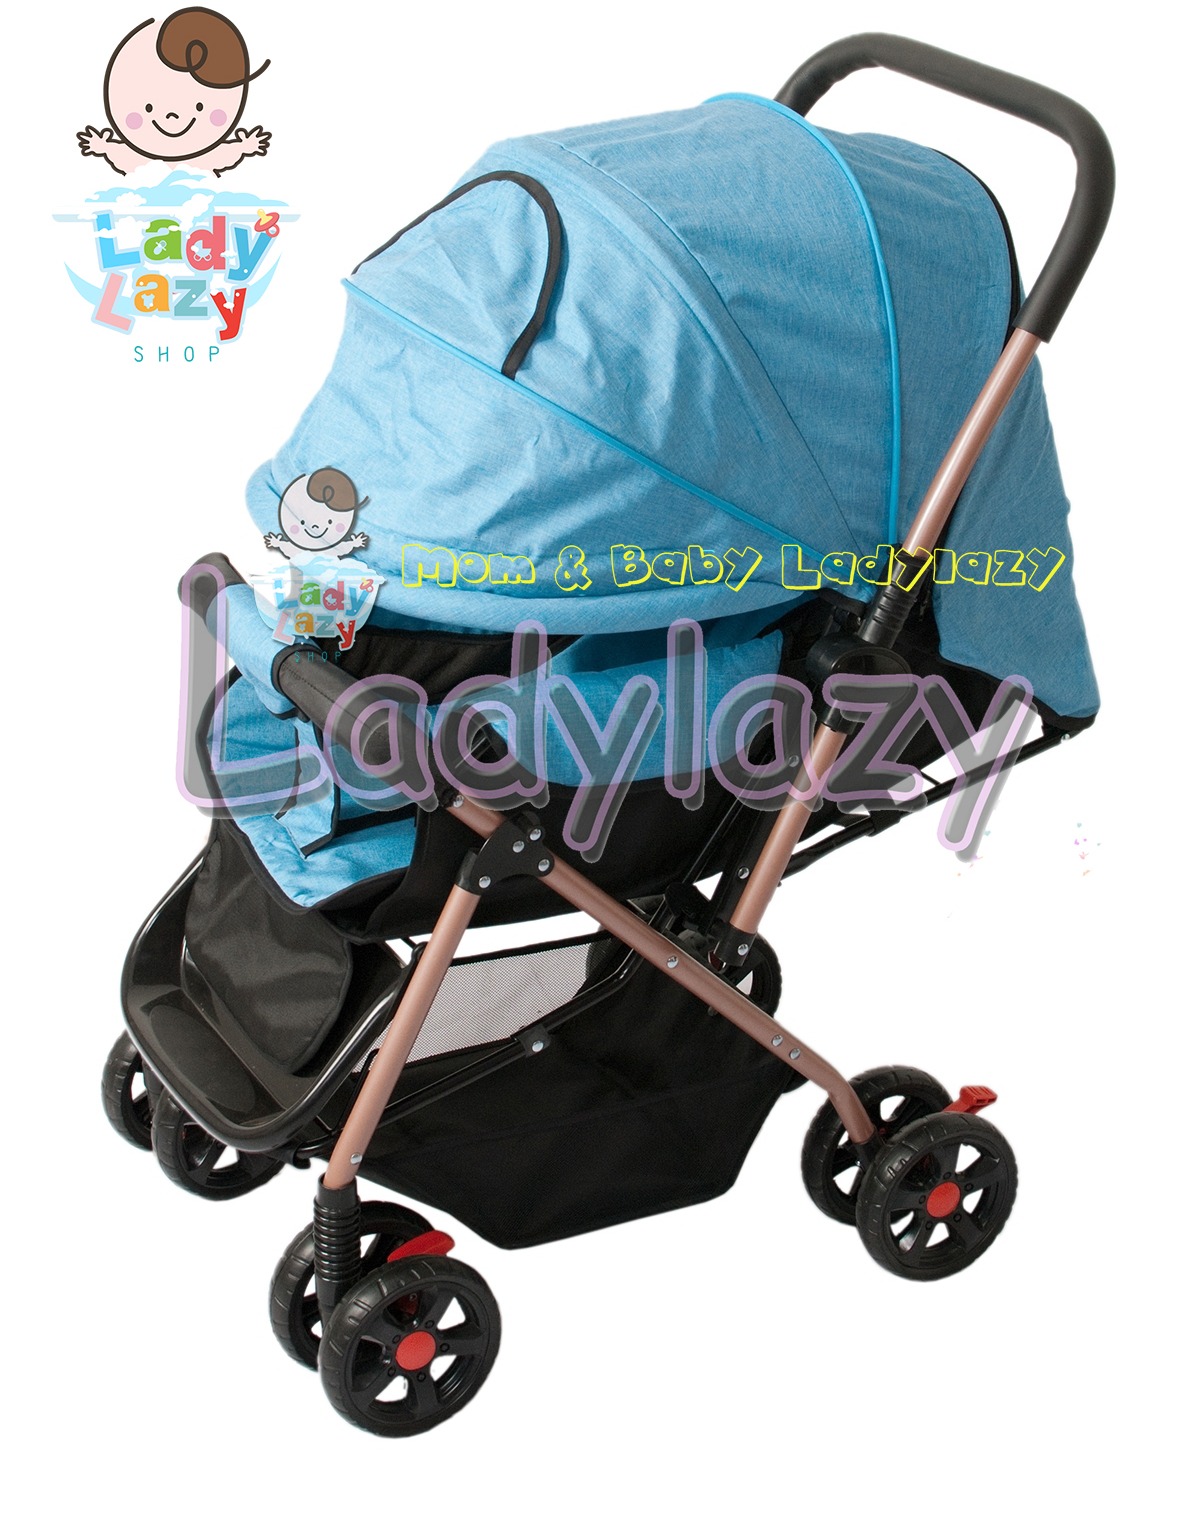 ladylazyรถเข็นเด็ก รุ่นLady02 ปรับนั่ง/เอน/นอน เข็นหน้า-หลังได้ ฟรีมุ้ง+กระเป๋า สีฟ้า